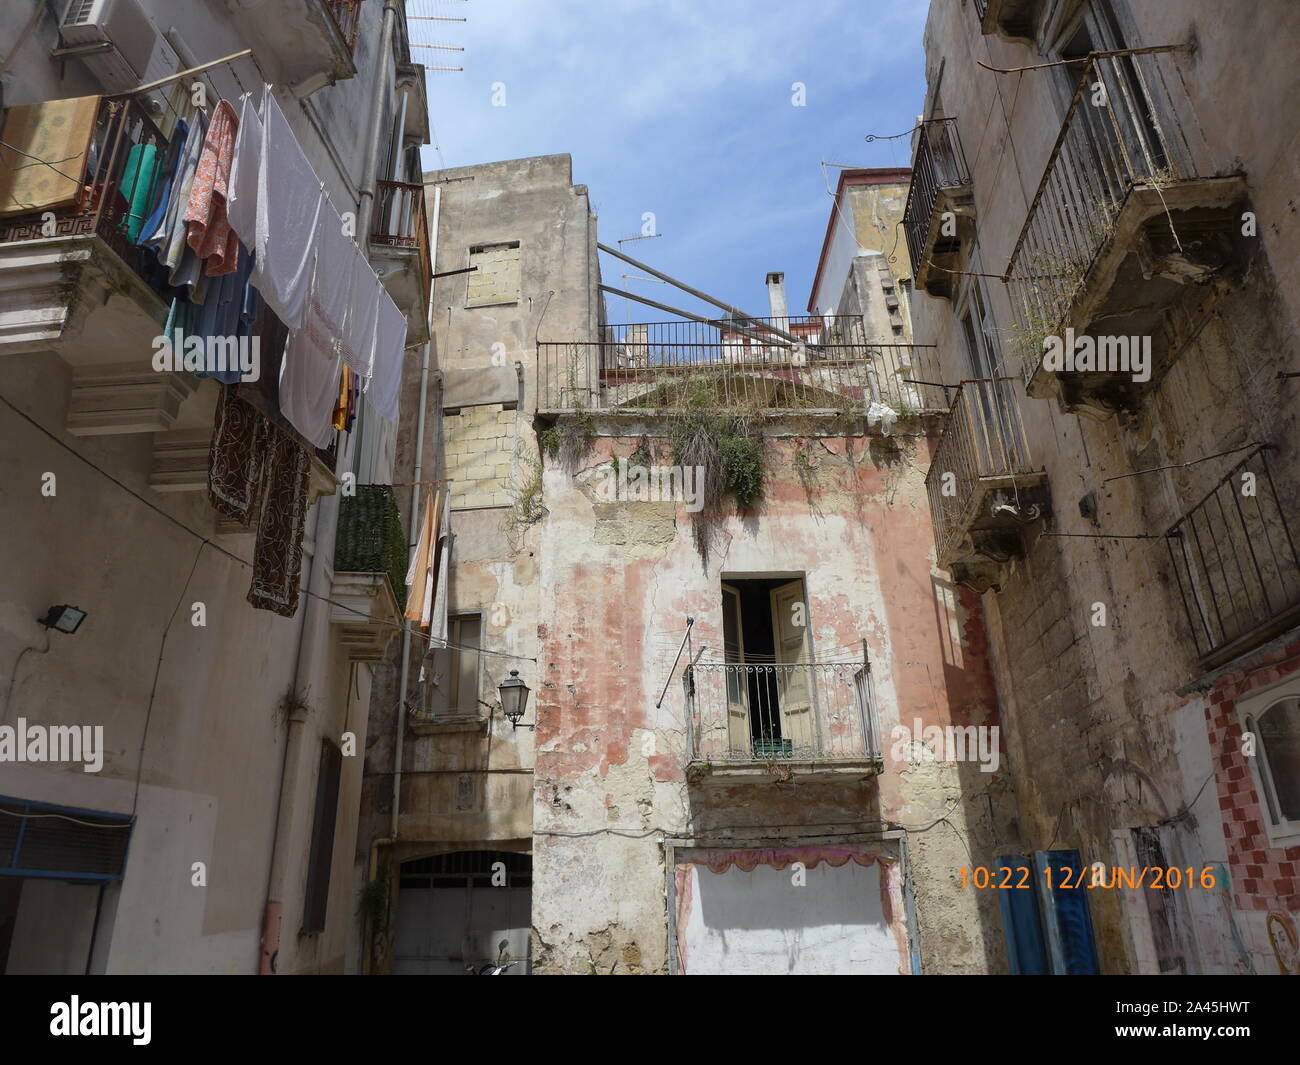 medieval city of Taranto, Italy Stock Photo - Alamy